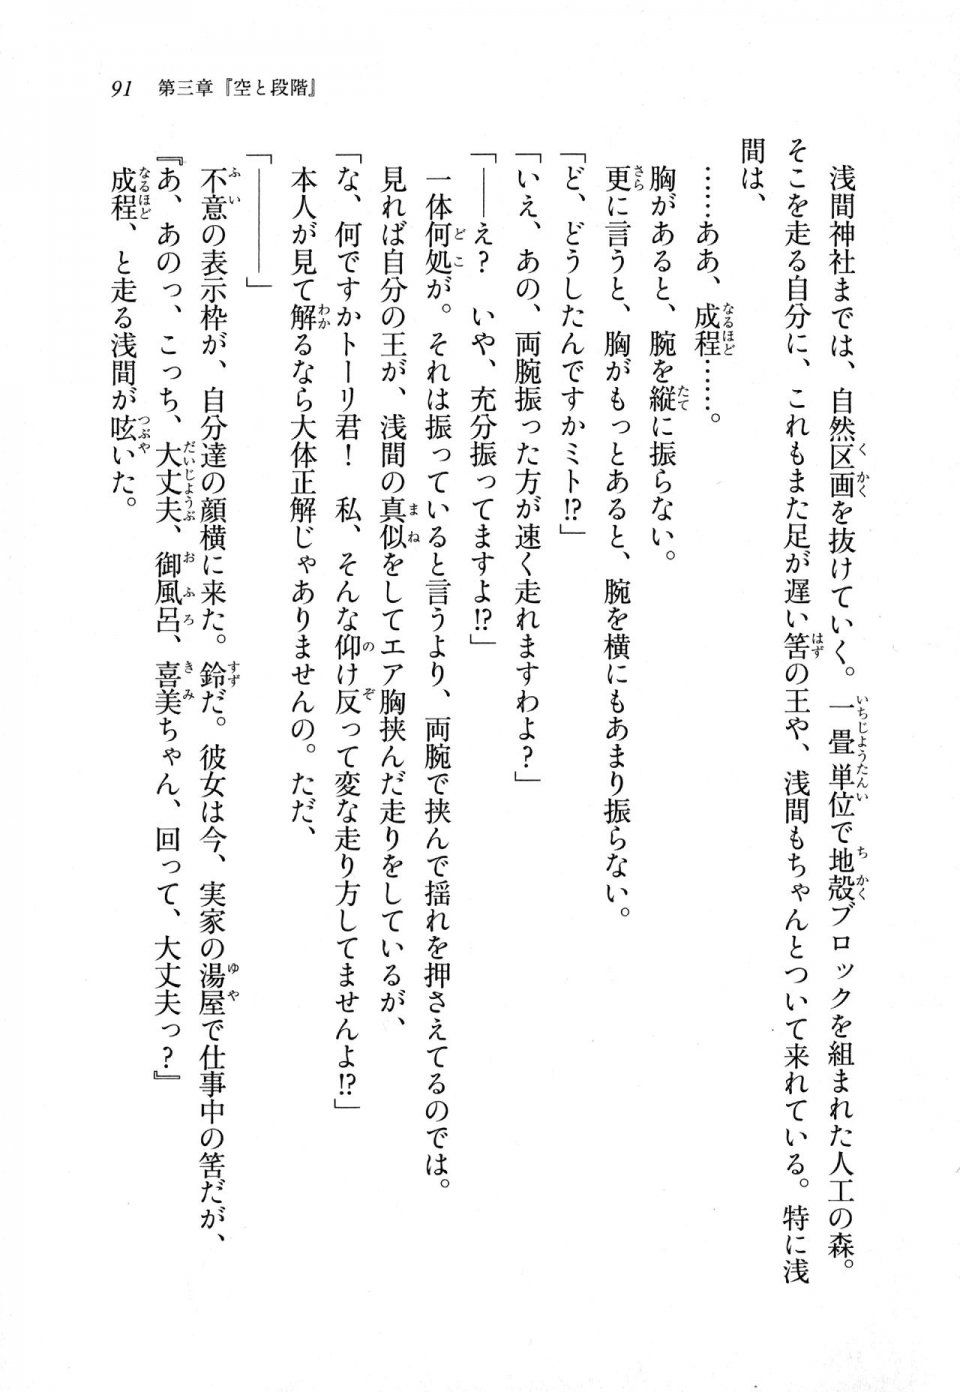 Kyoukai Senjou no Horizon LN Sidestory Vol 1 - Photo #89